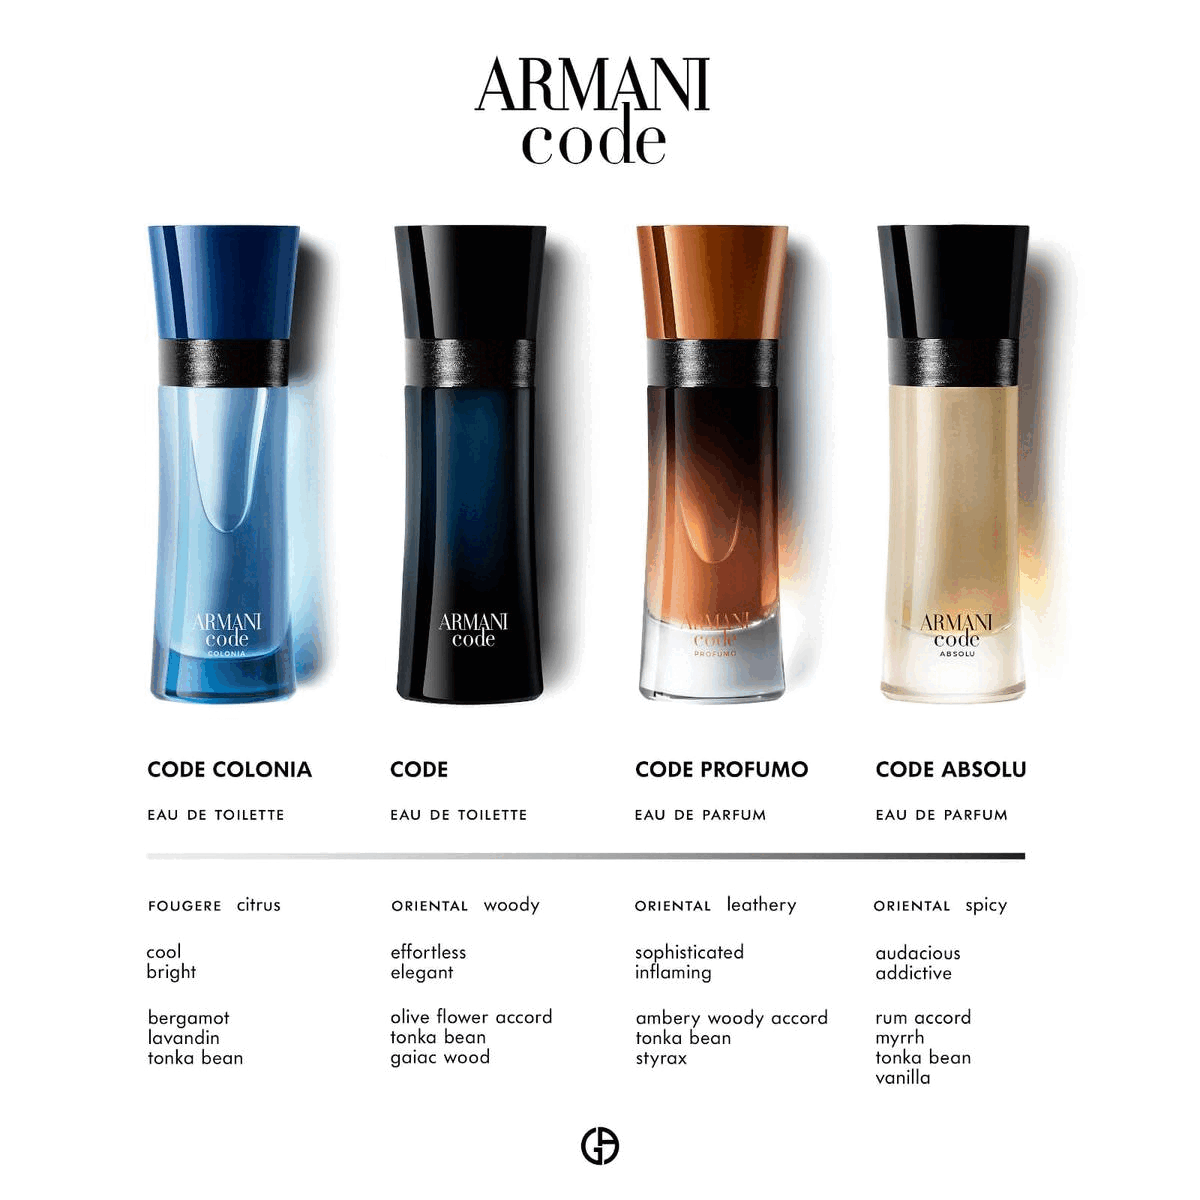 Armani perfume codes and scents